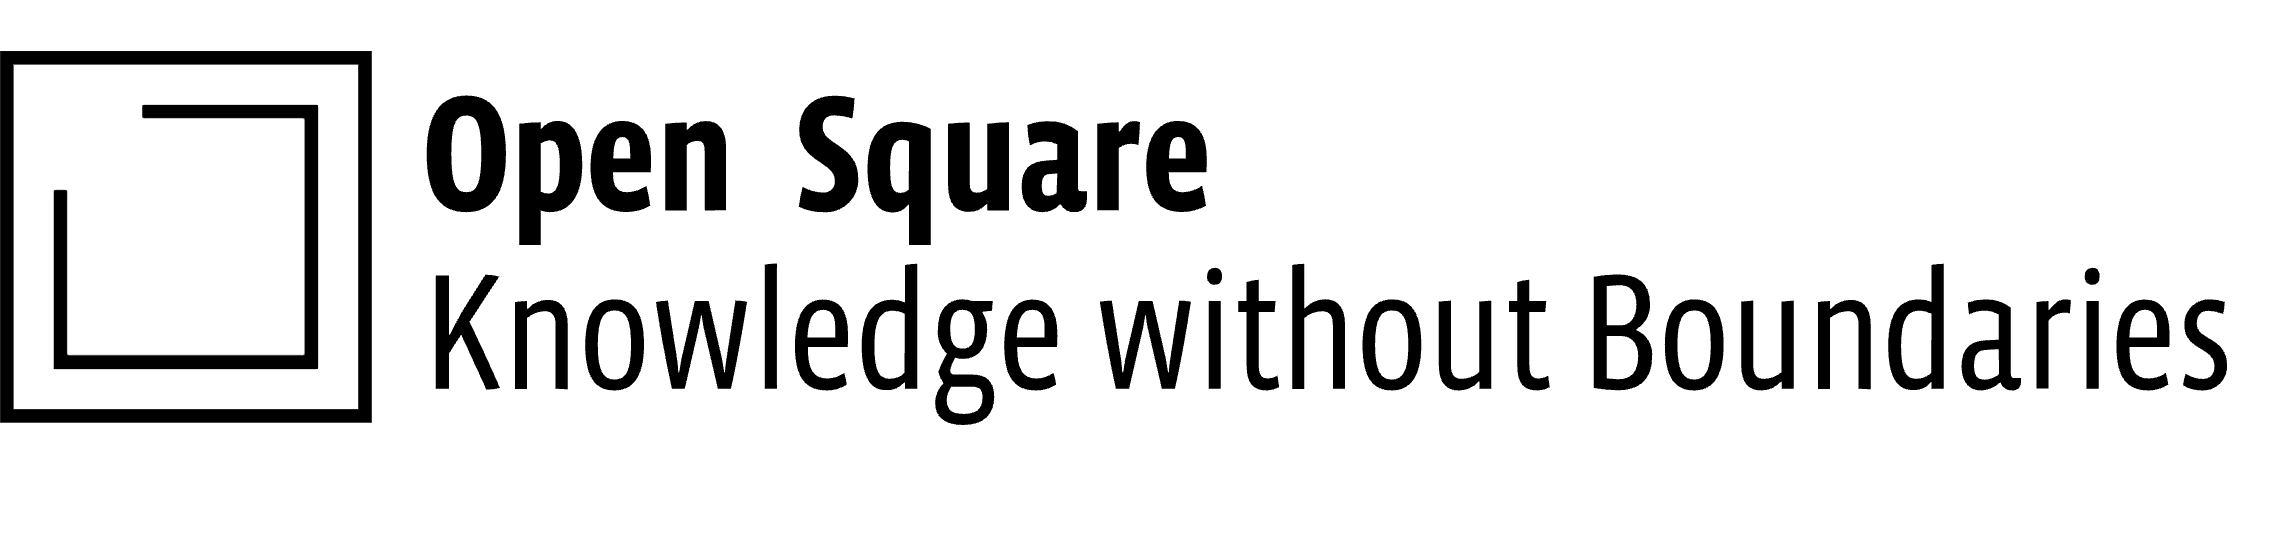 Open Square logo